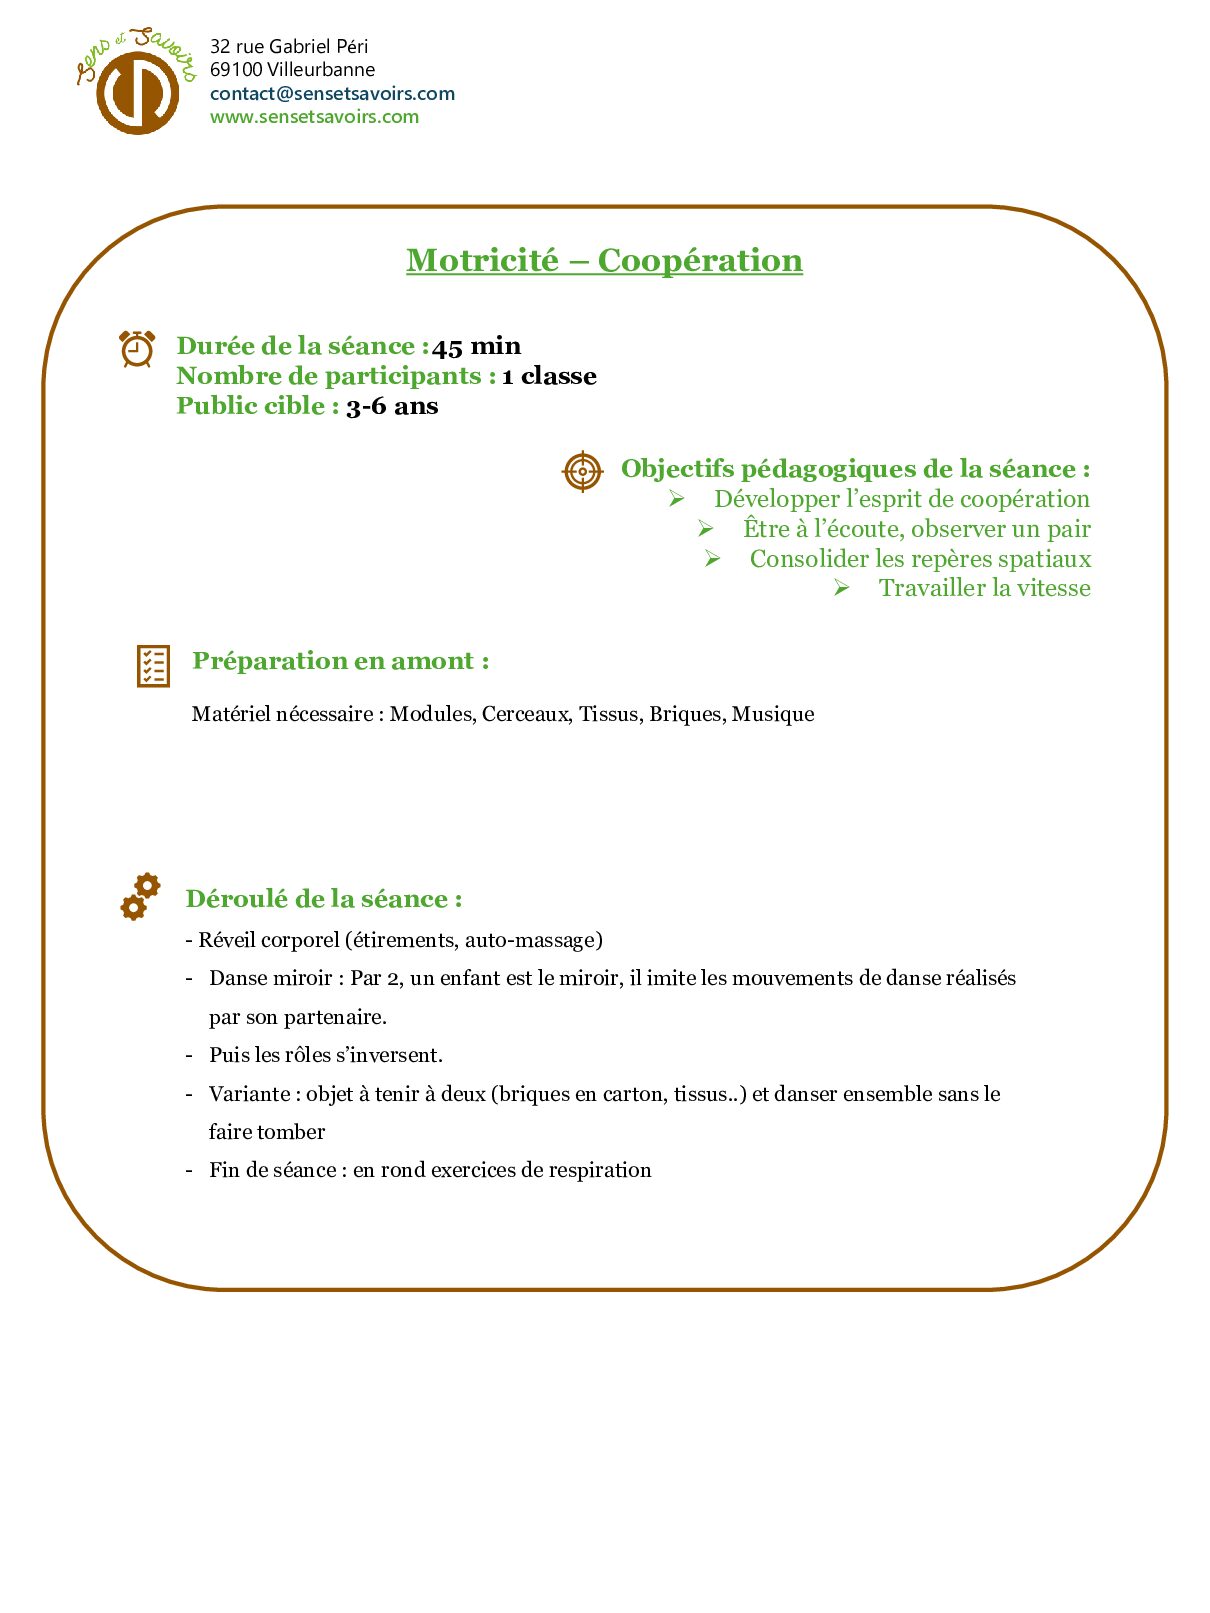 Motricite Cooperation pdf